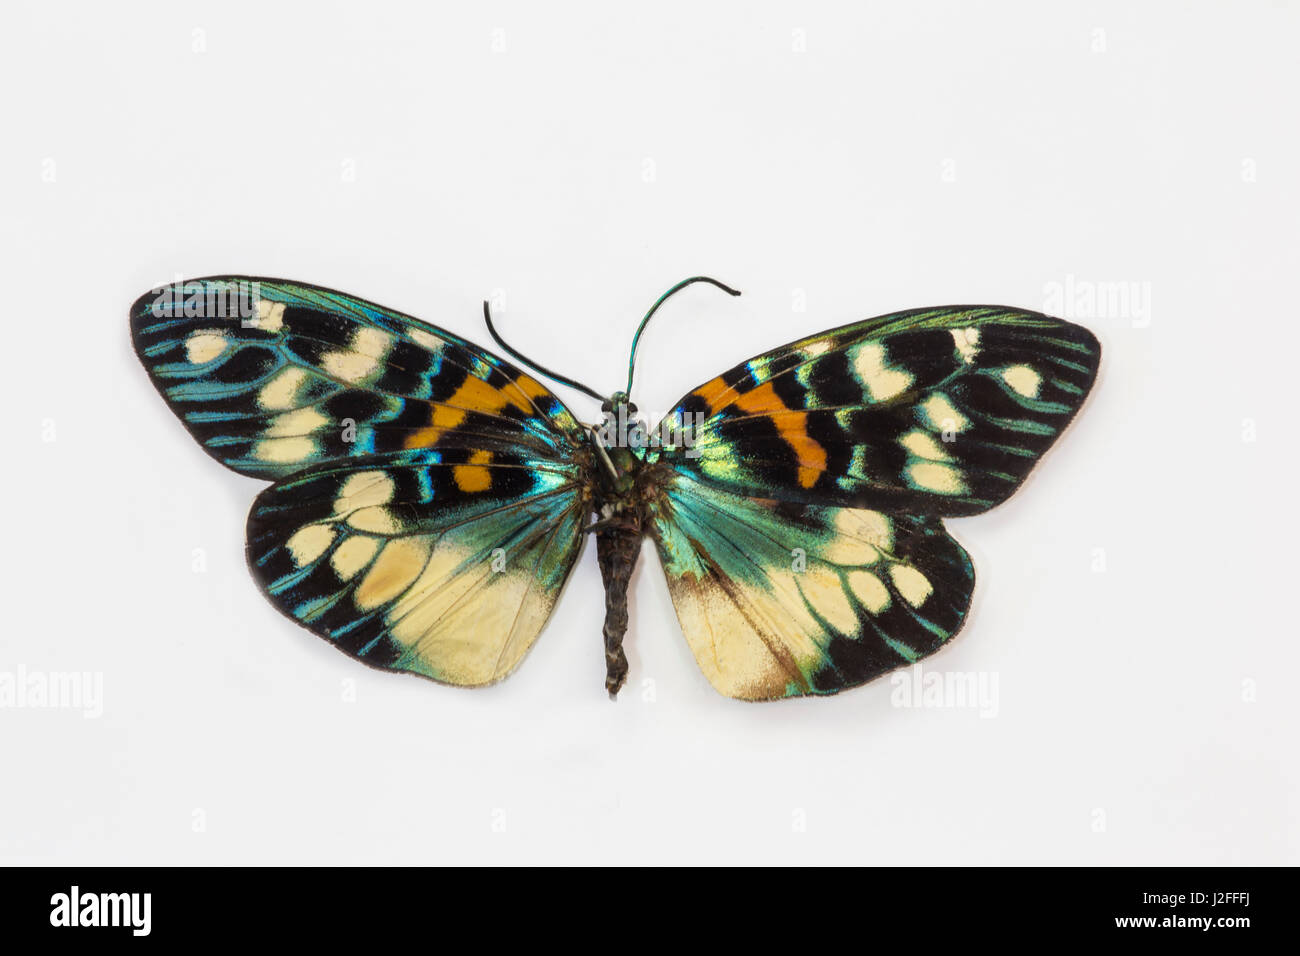 Pulchera Tag fliegen Motten Erasmia Chinensis, Vergleich der oberen Flügel rechts und links unten Flügel Stockfoto